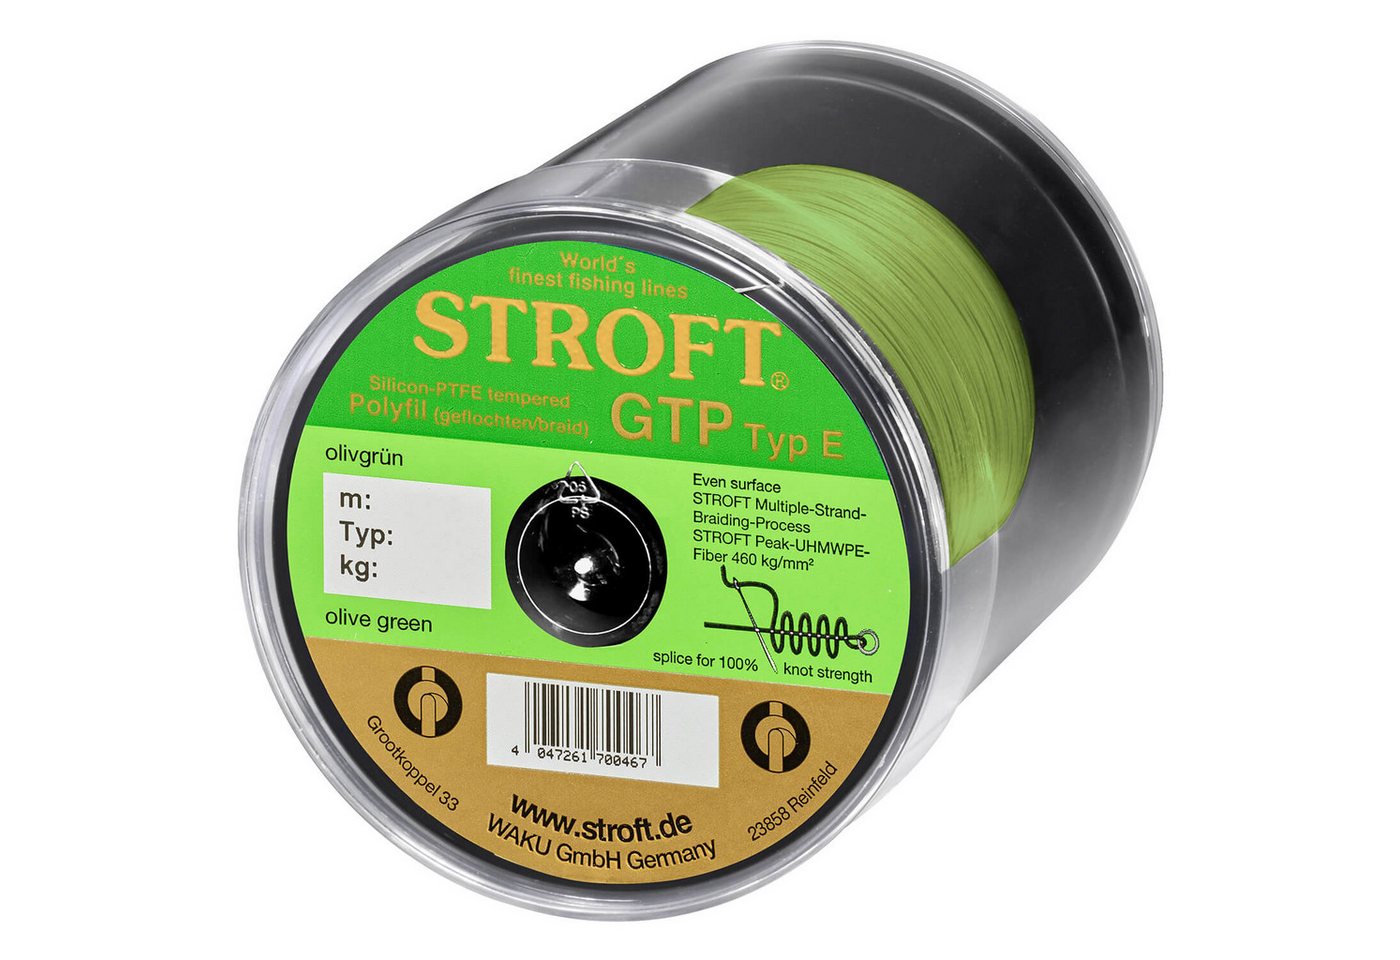 Stroft Angelschnur Stroft Schnur GTP Typ E geflochten olivgrün 600m, 600 m Länge, 0.13 mm Fadendurchmesser, (1-St), 4,25kg Tragkraft von Stroft